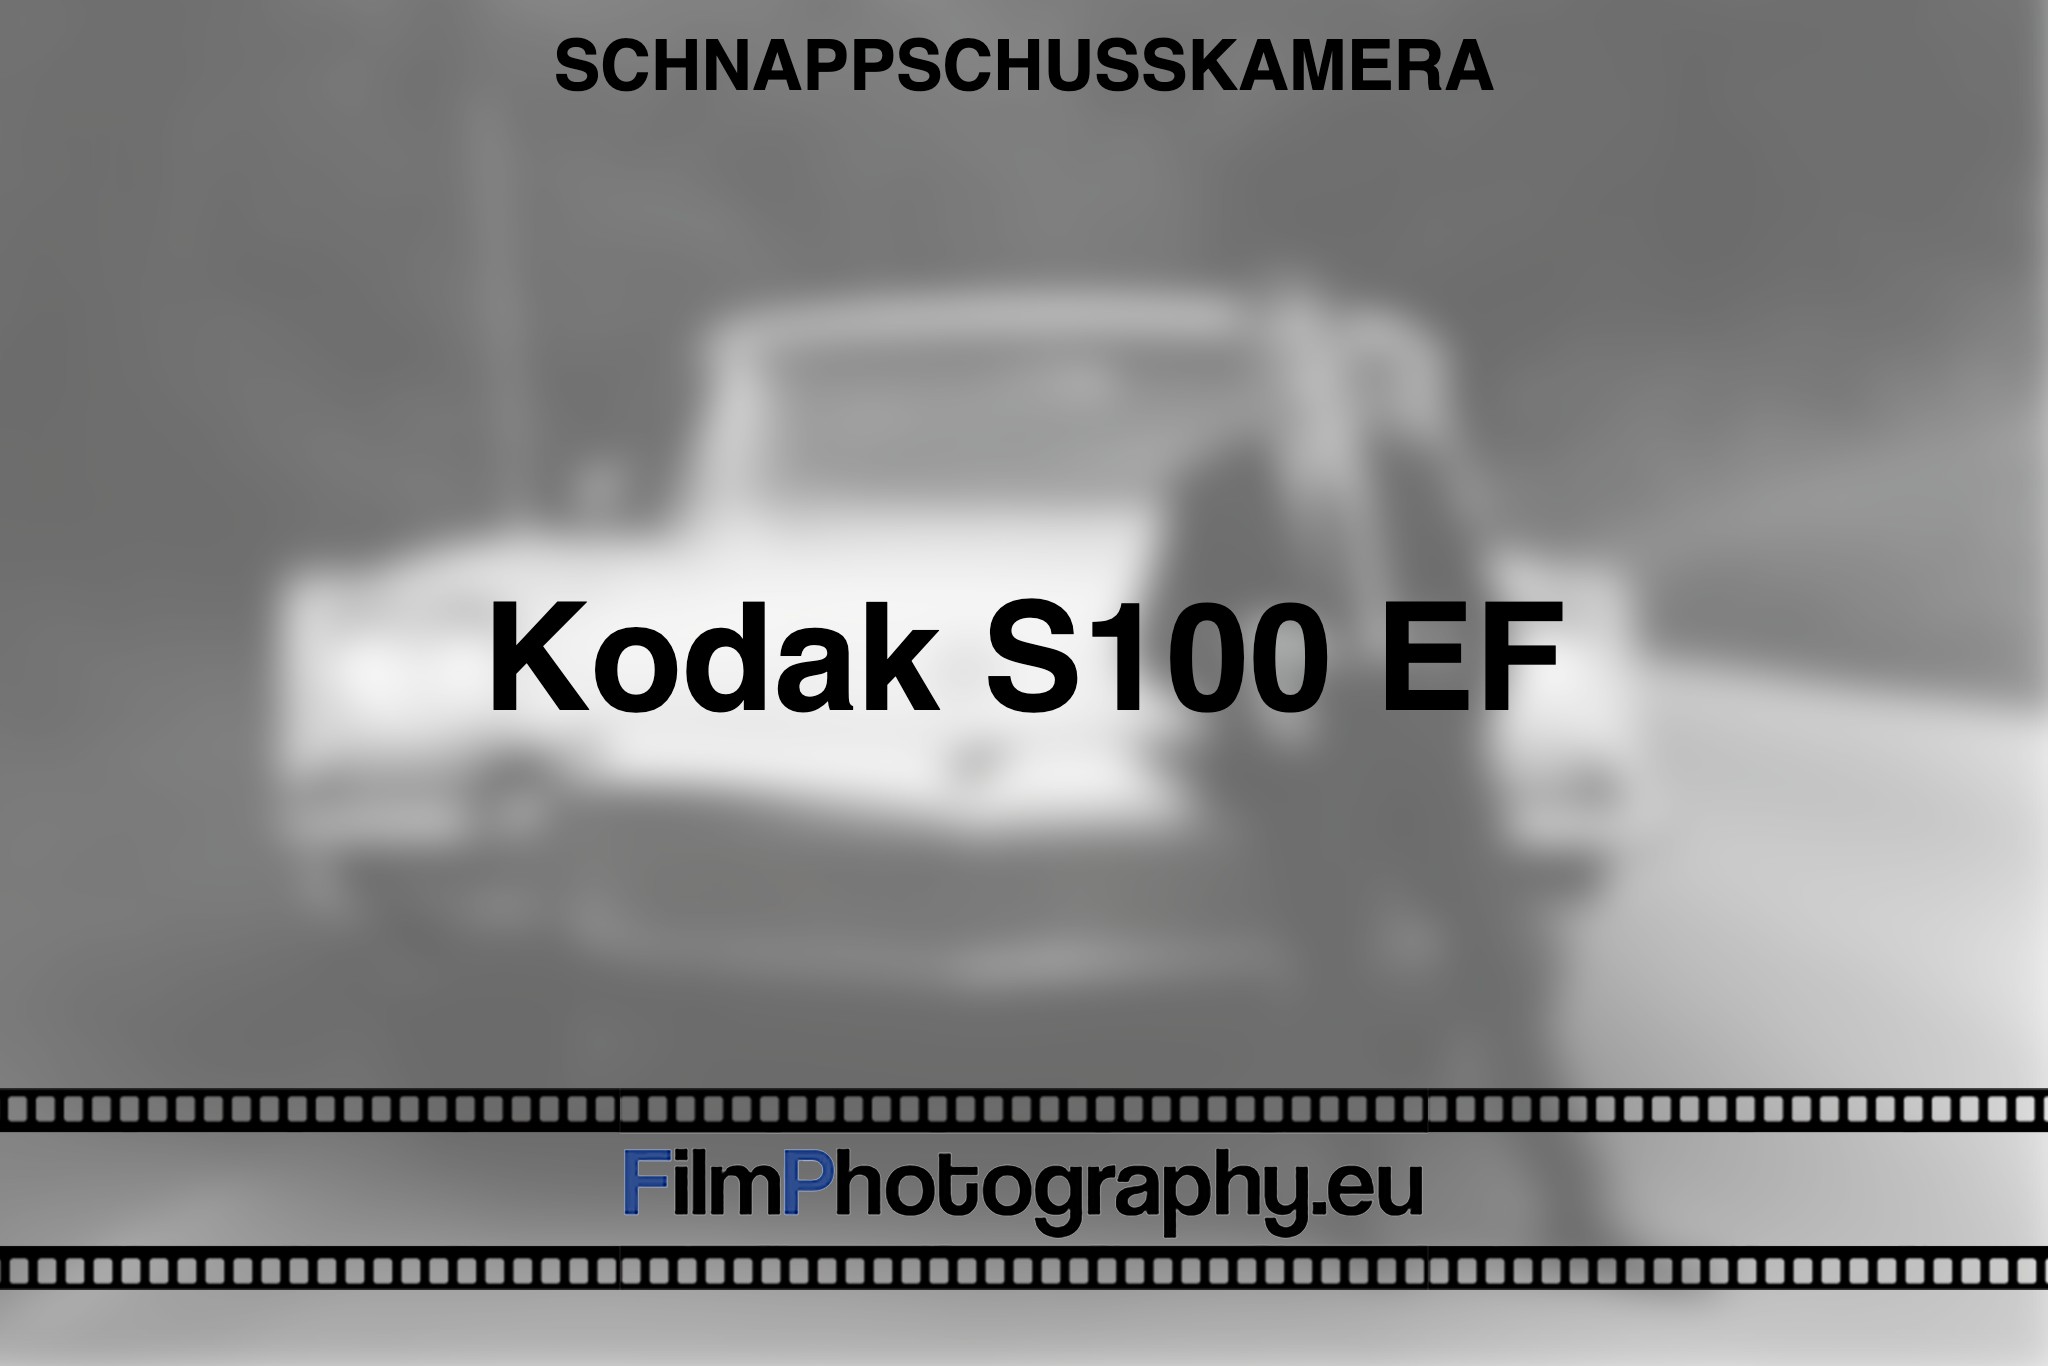 kodak-s100-ef-schnappschusskamera-bnv